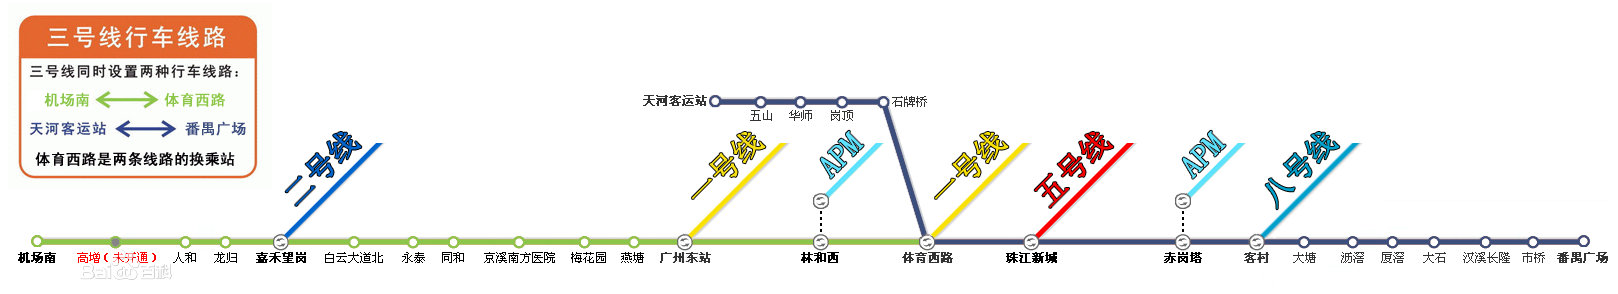 廣州捷運三號線主線、北延段